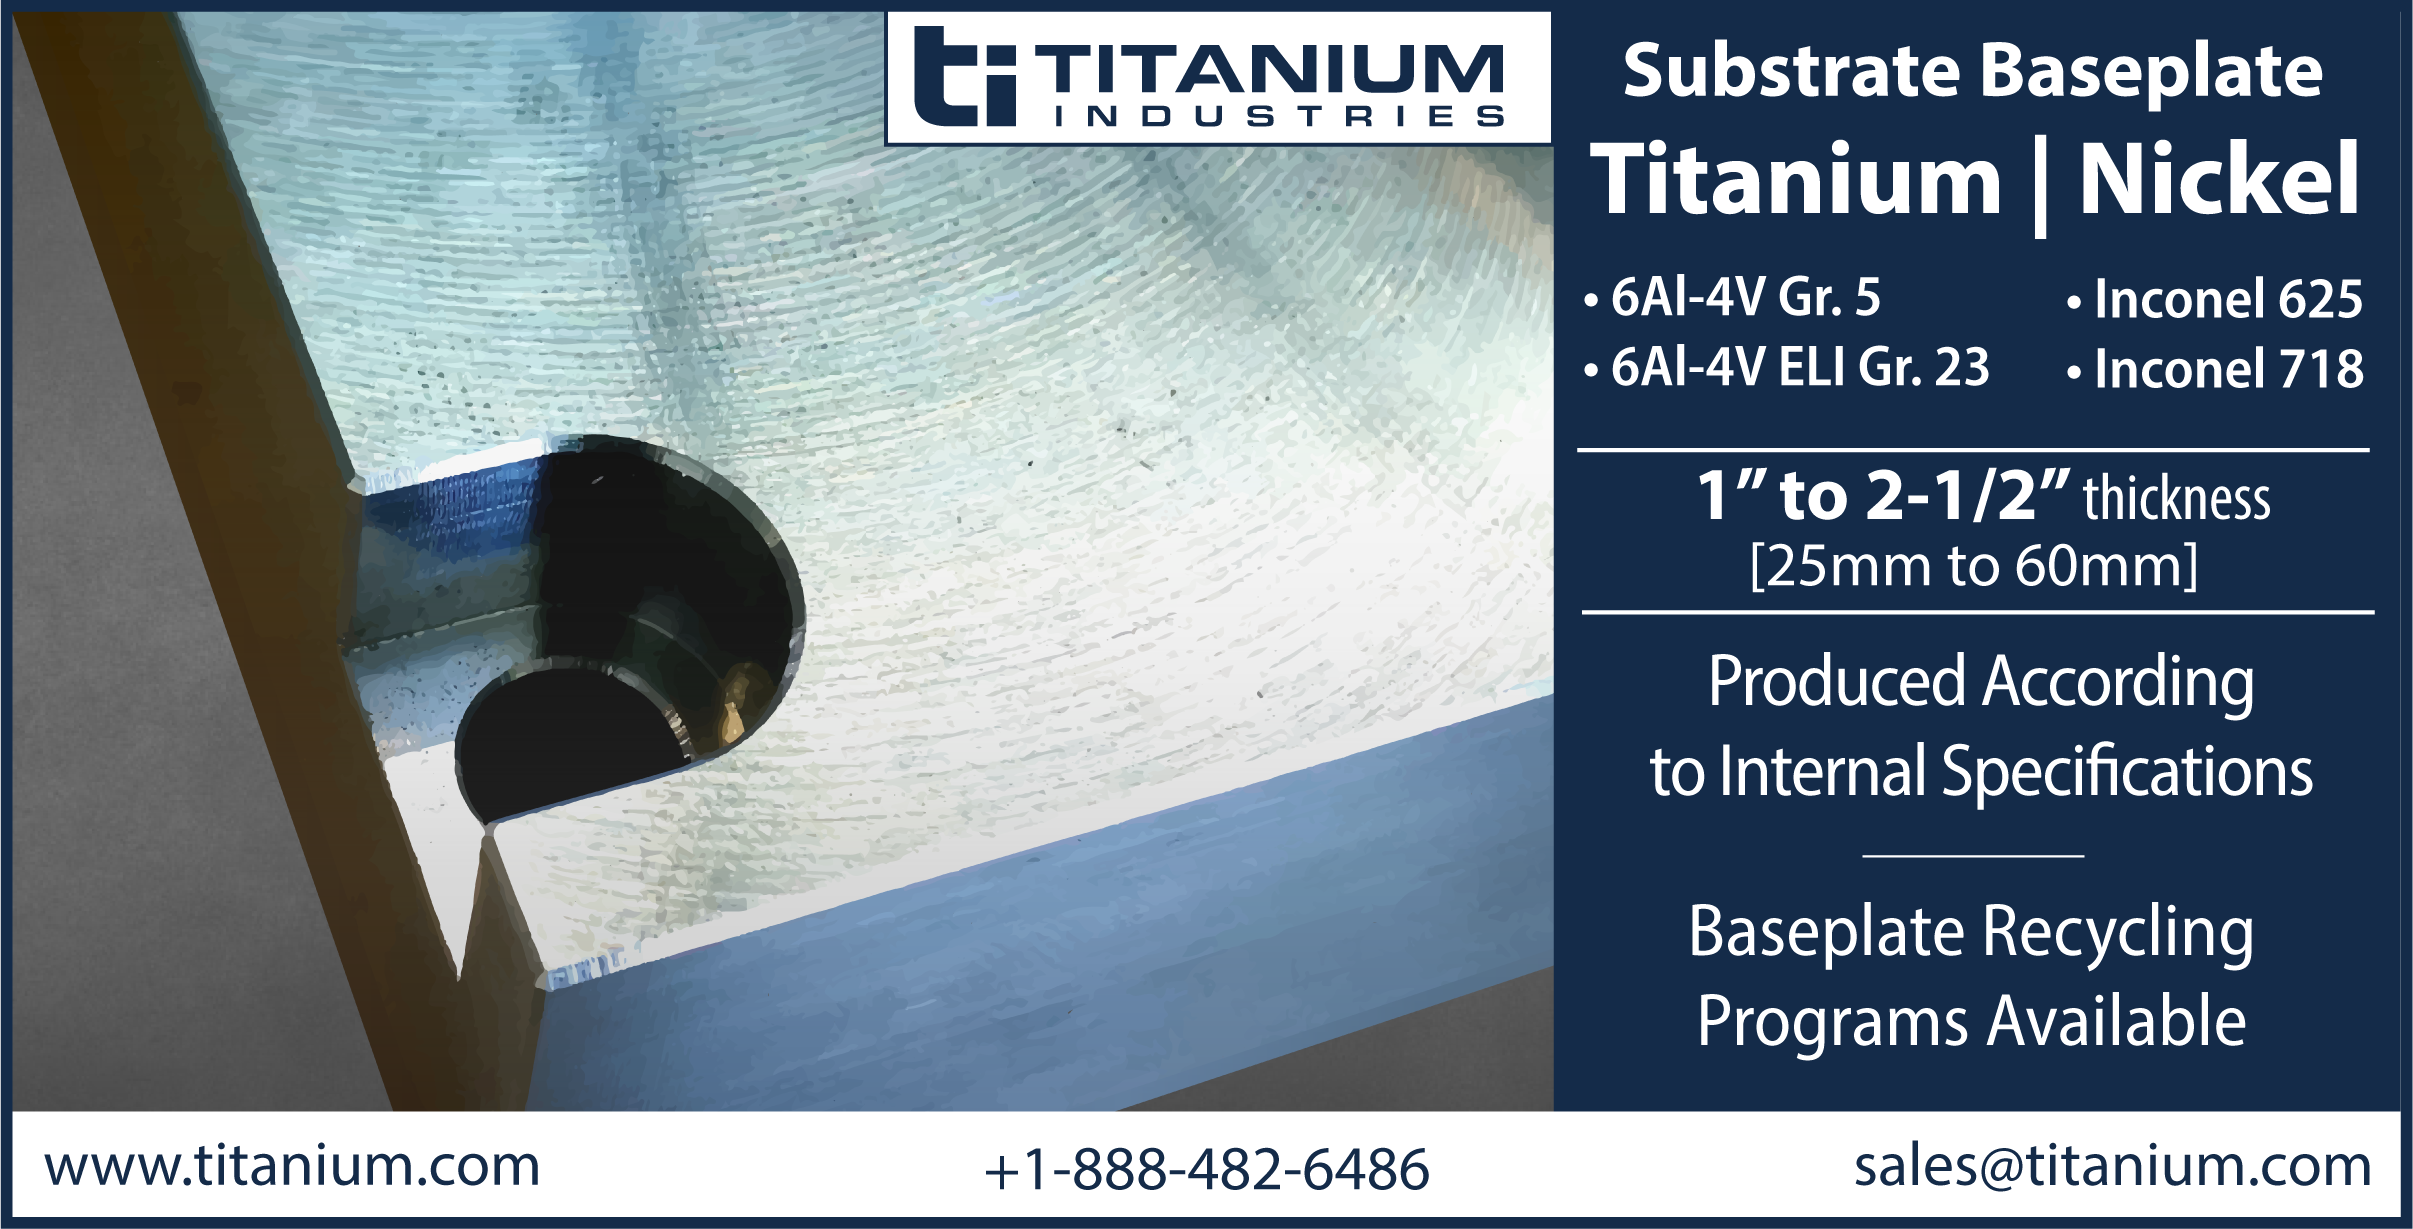 Titanium Industries Additive Manufacturing